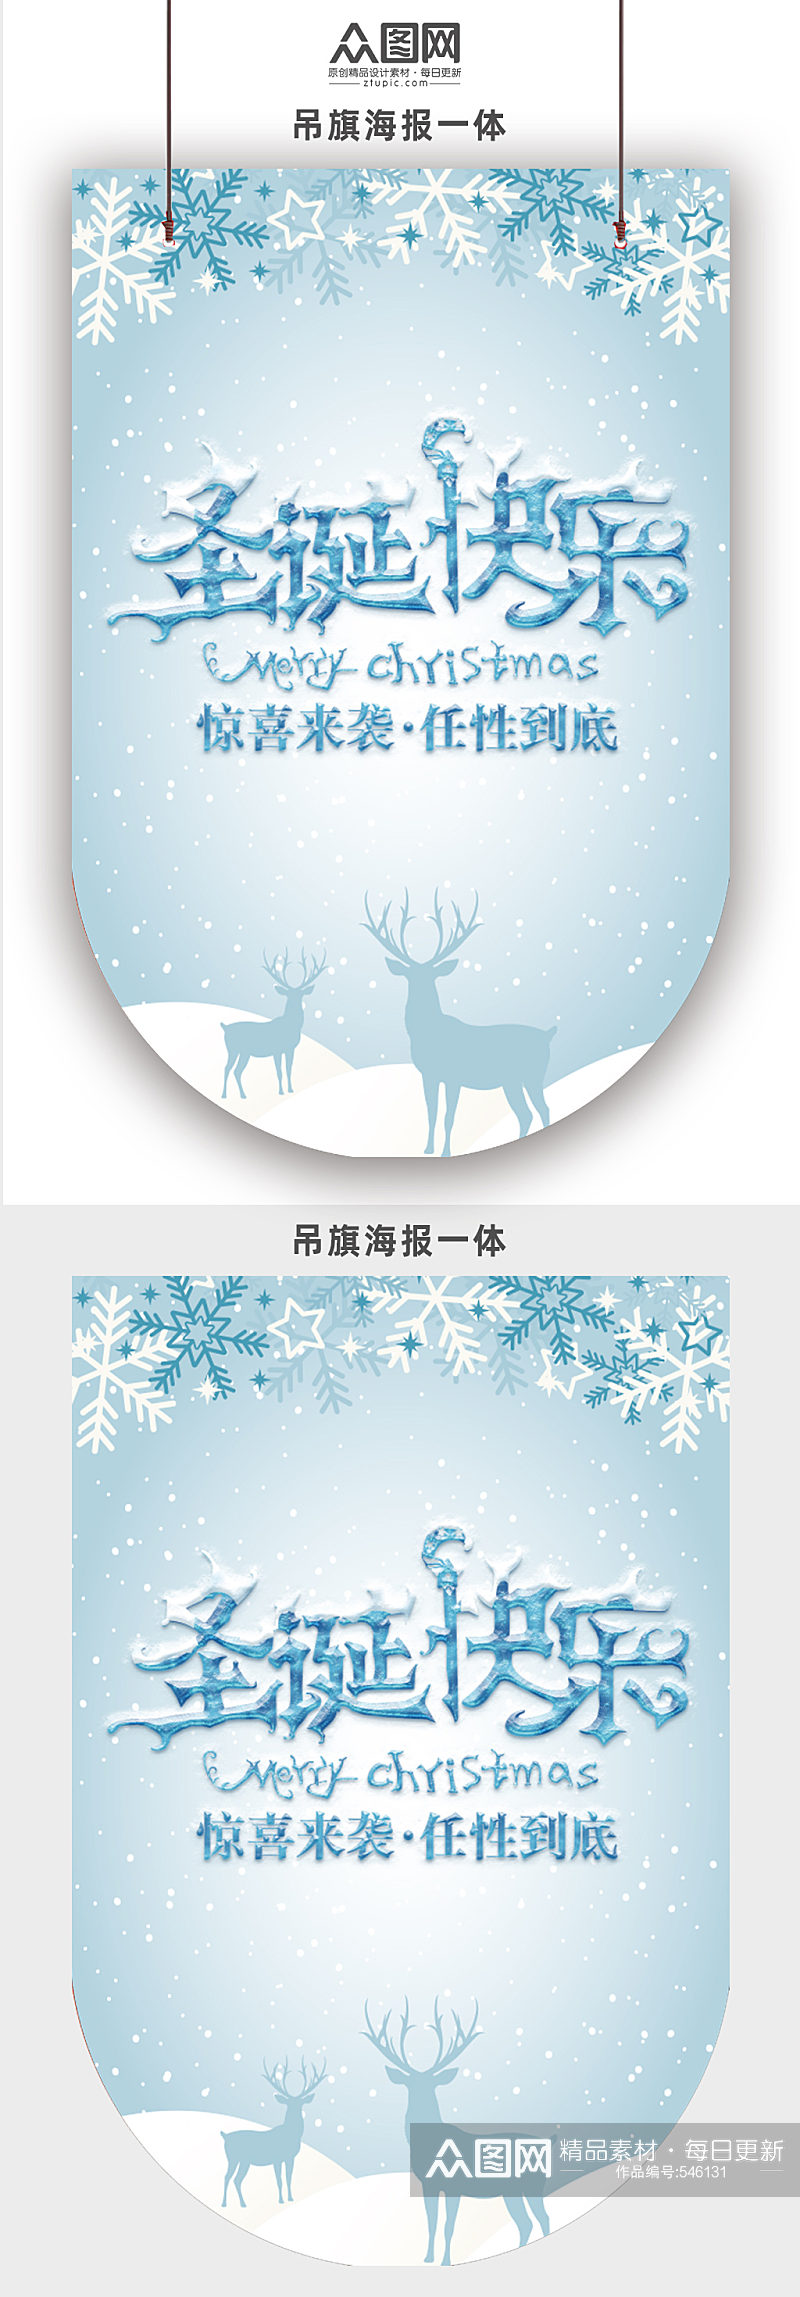 冰雪冬季圣诞快乐节日活动吊旗素材